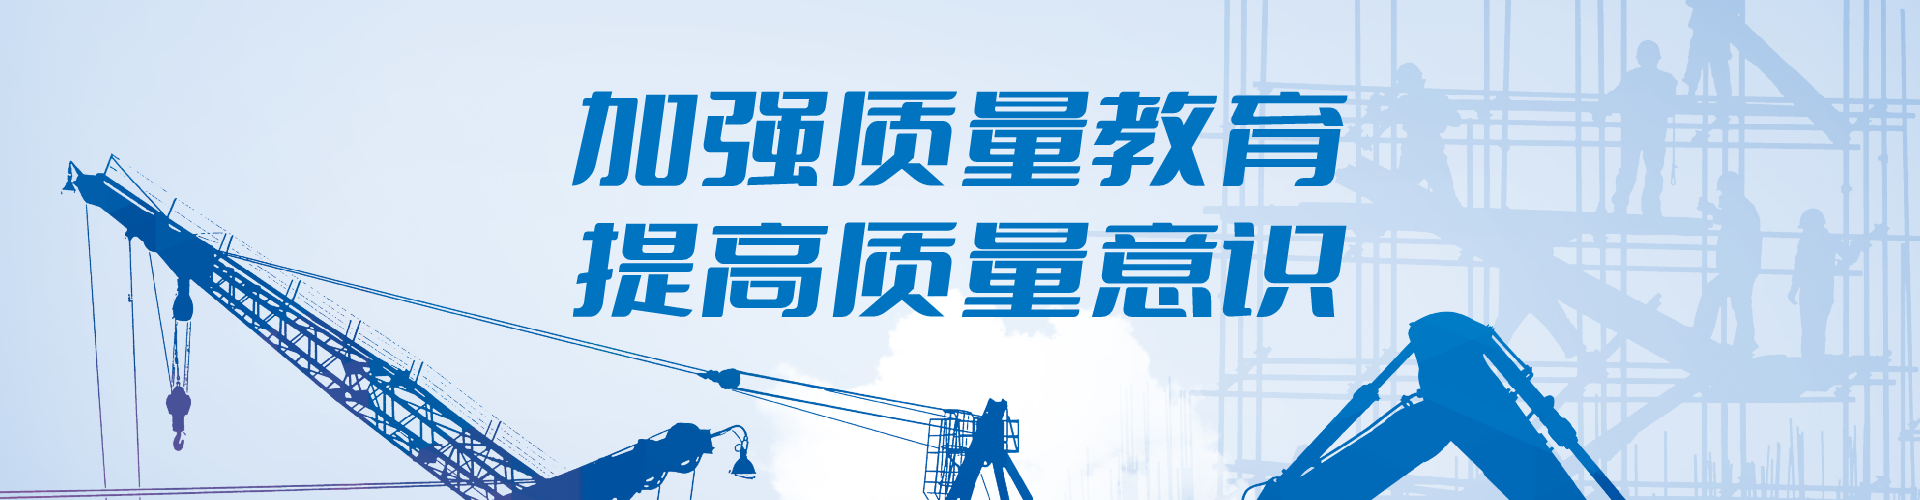 2022.2中水电建设 重庆地铁安全体验中心项目